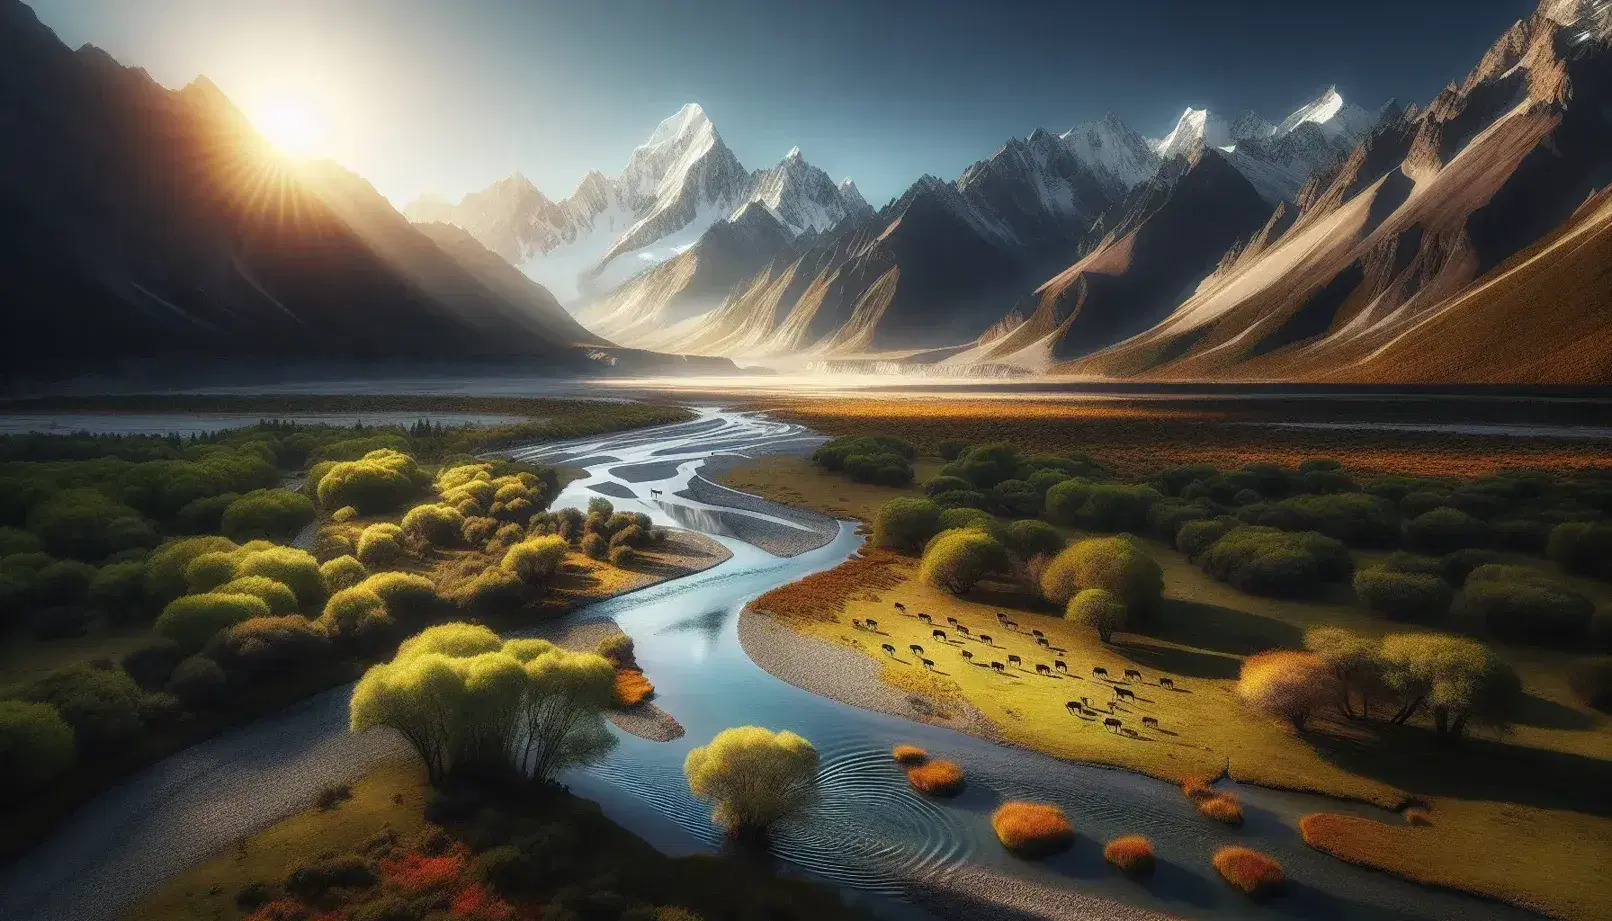 Valle fluviale con cervi al pascolo, montagne innevate sullo sfondo e cielo azzurro riflesso nel fiume.